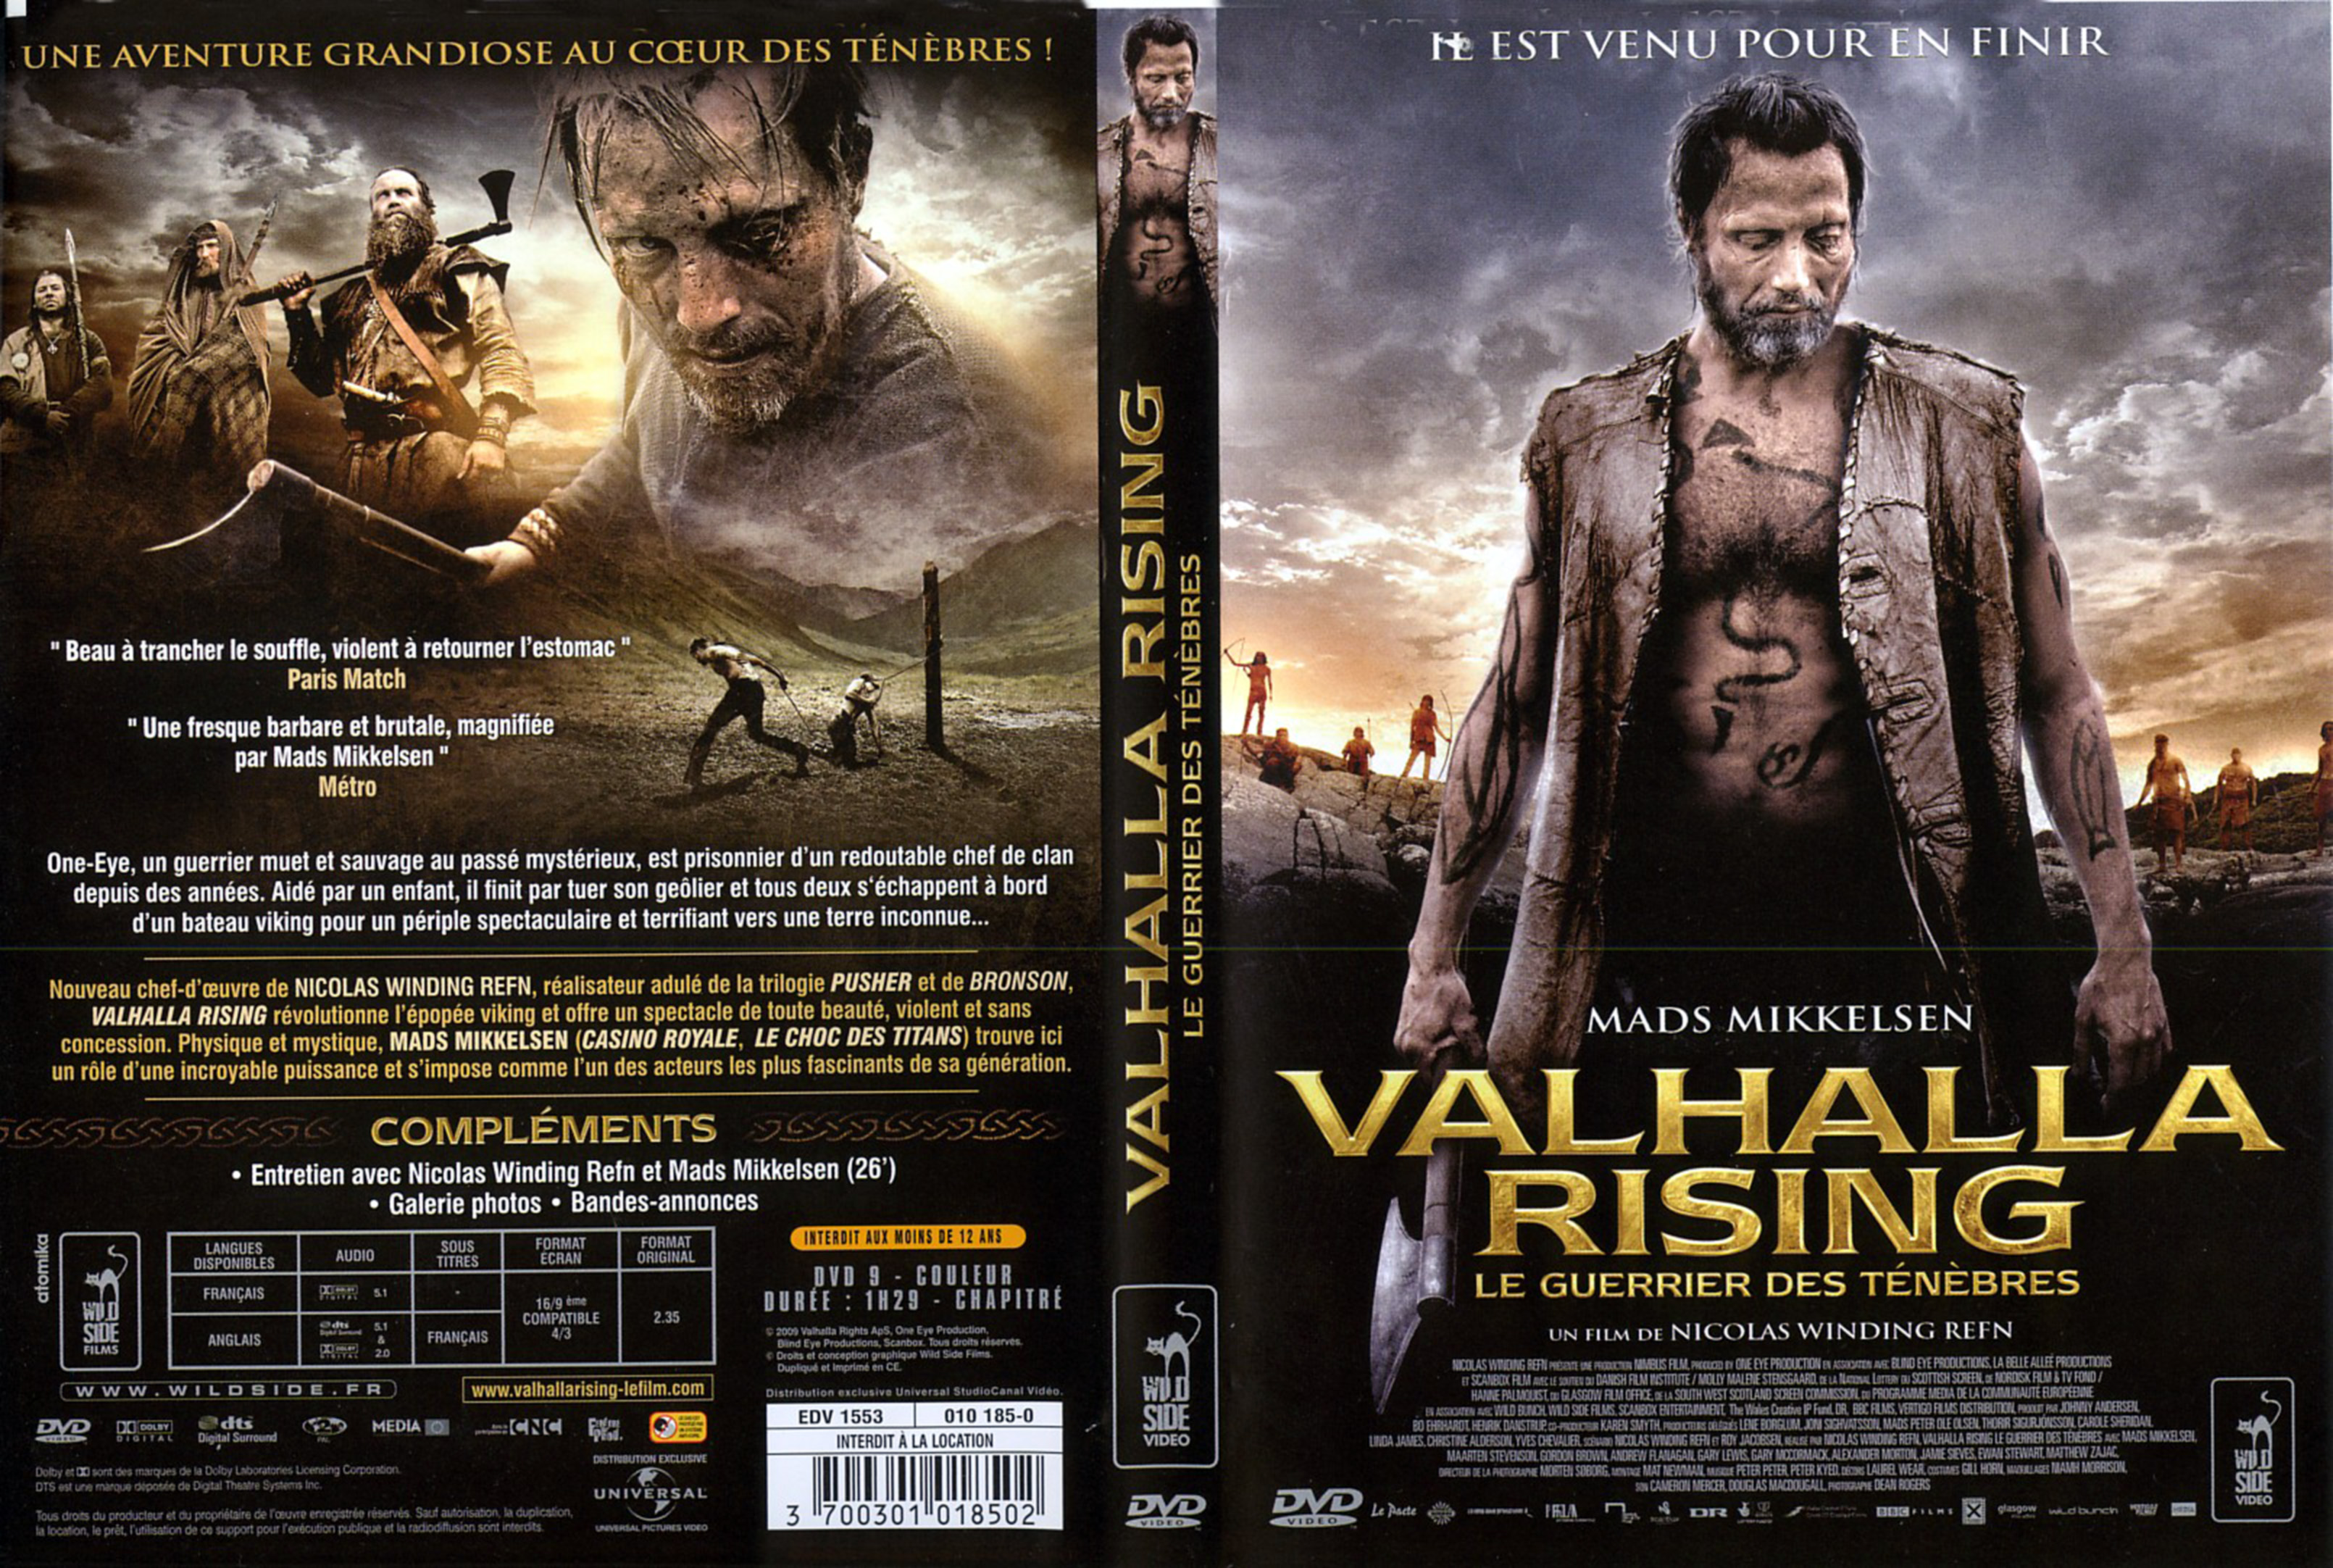 Jaquette DVD Valhalla rising